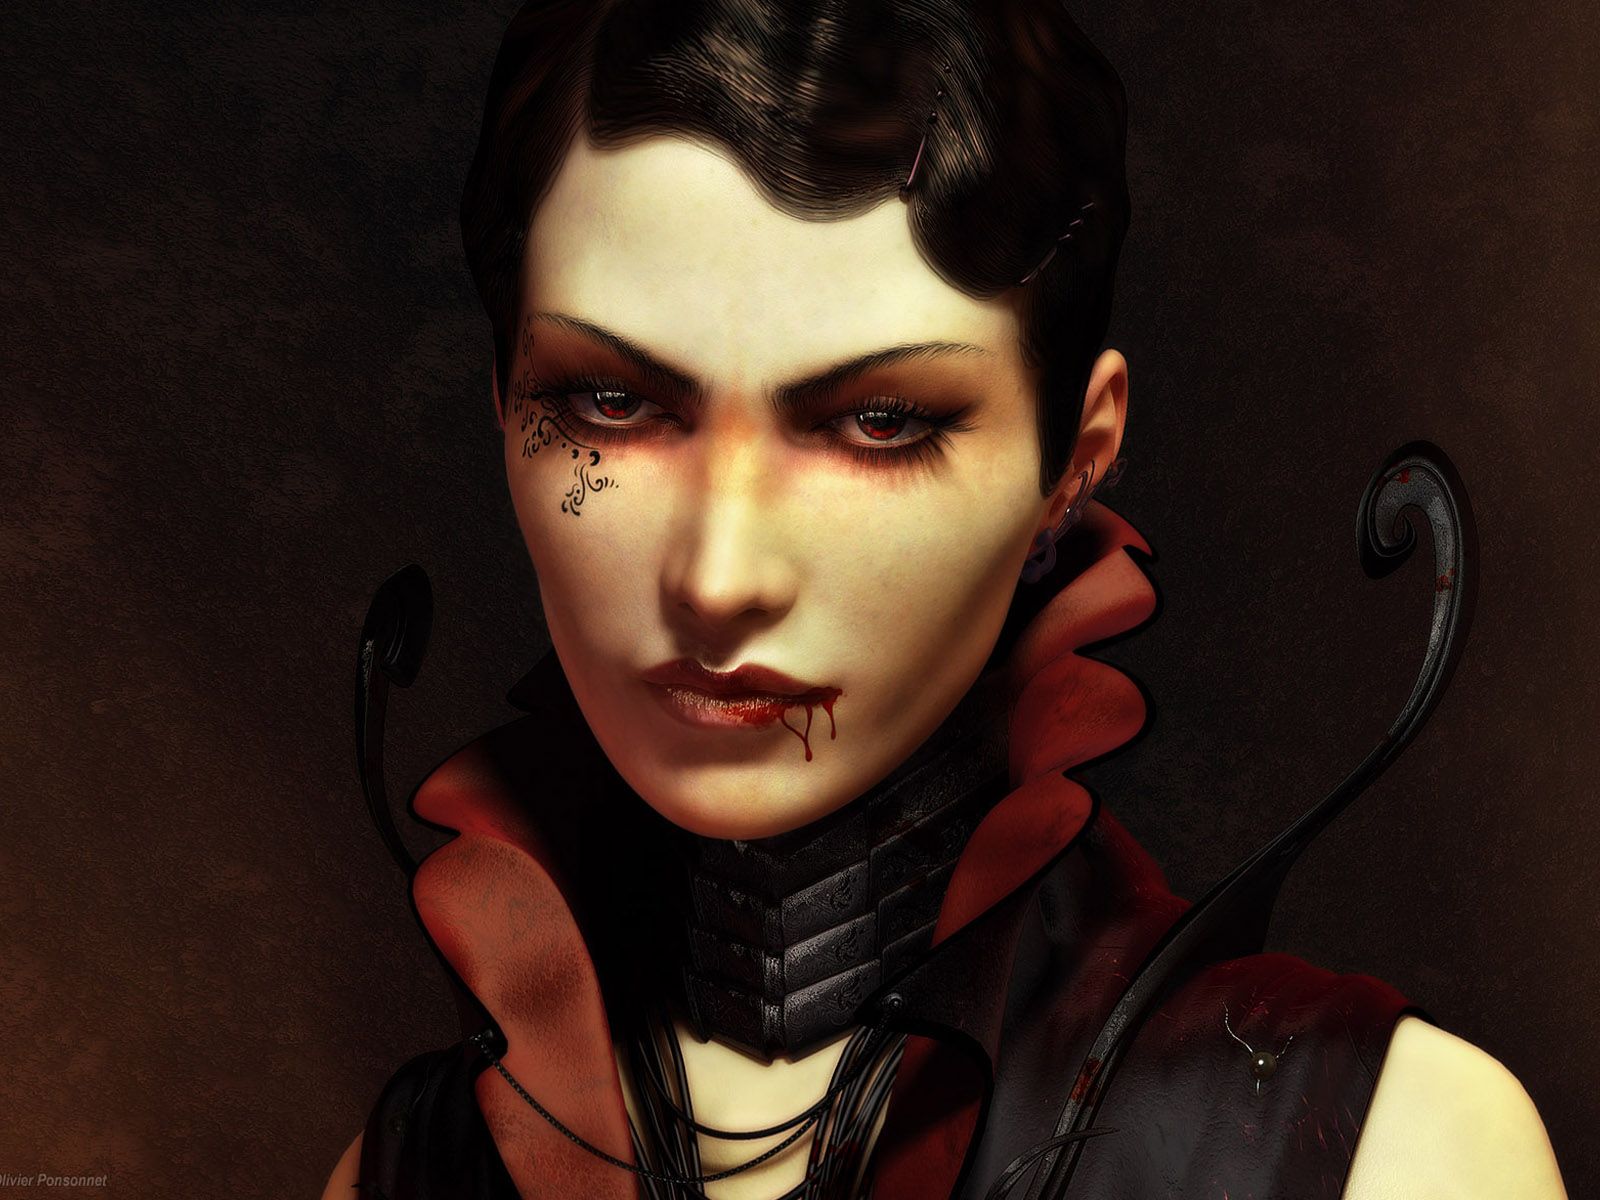 Blood Dark Elegant Vampire Fantasy Girl .wallha.com